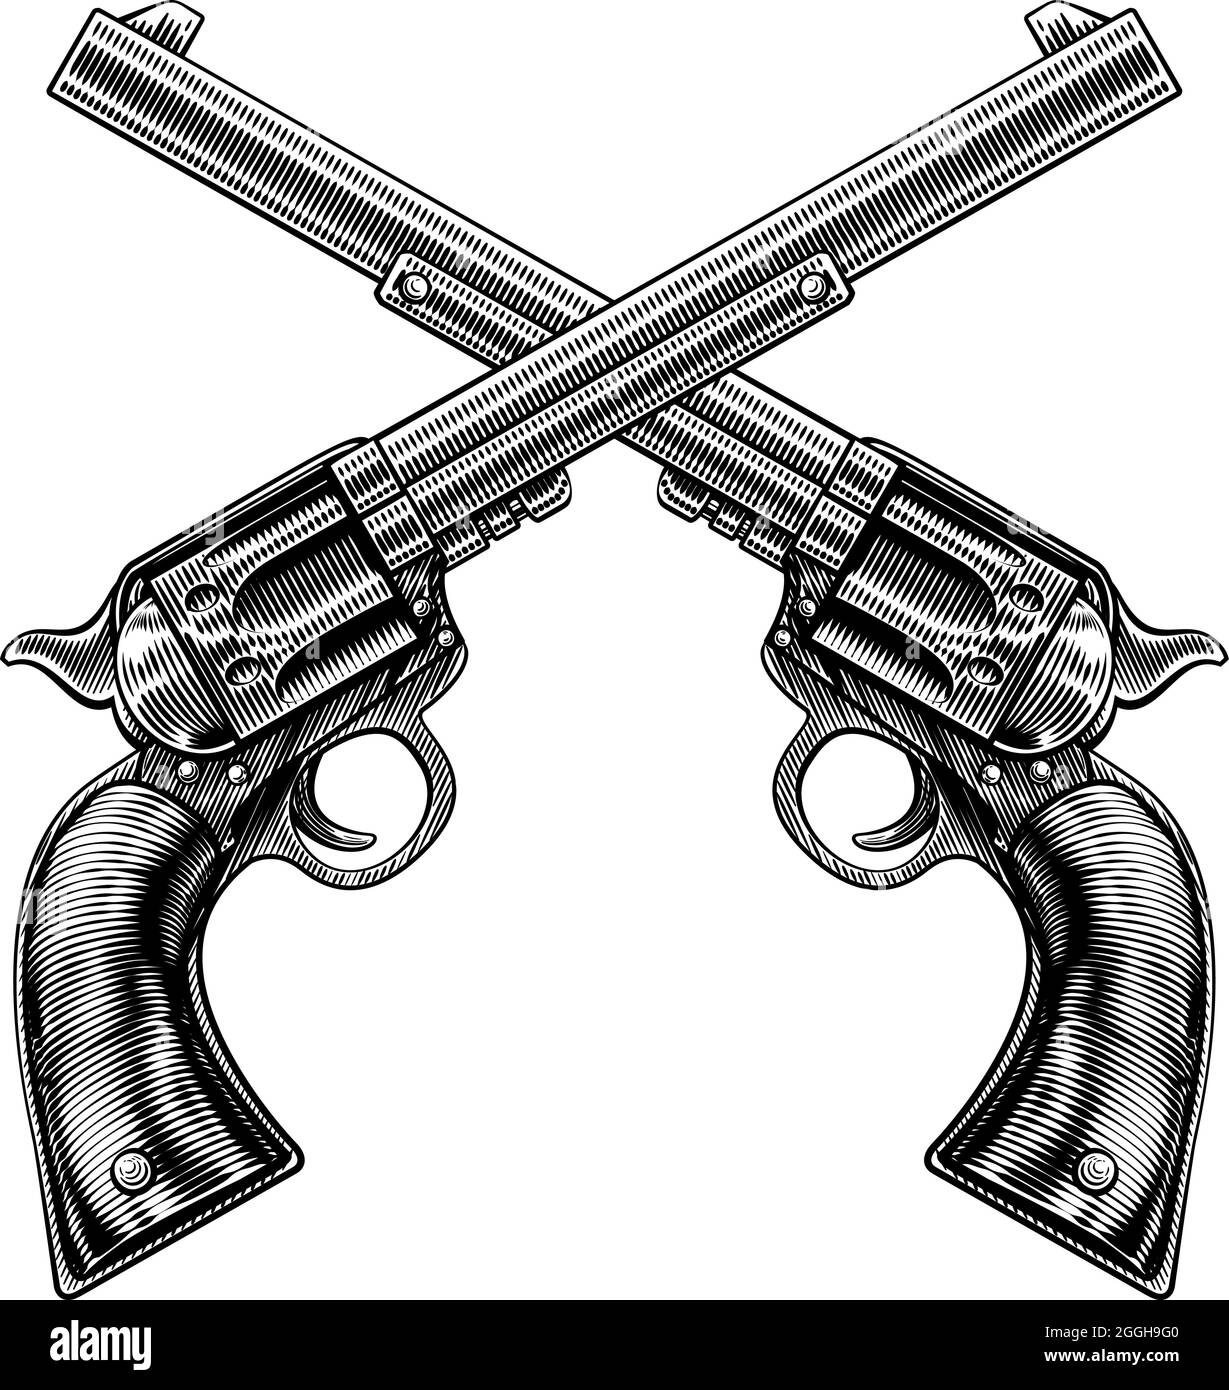 2000 Crossed Guns Illustrations RoyaltyFree Vector Graphics  Clip Art   iStock  Pistols Smoking gun Gun barrel